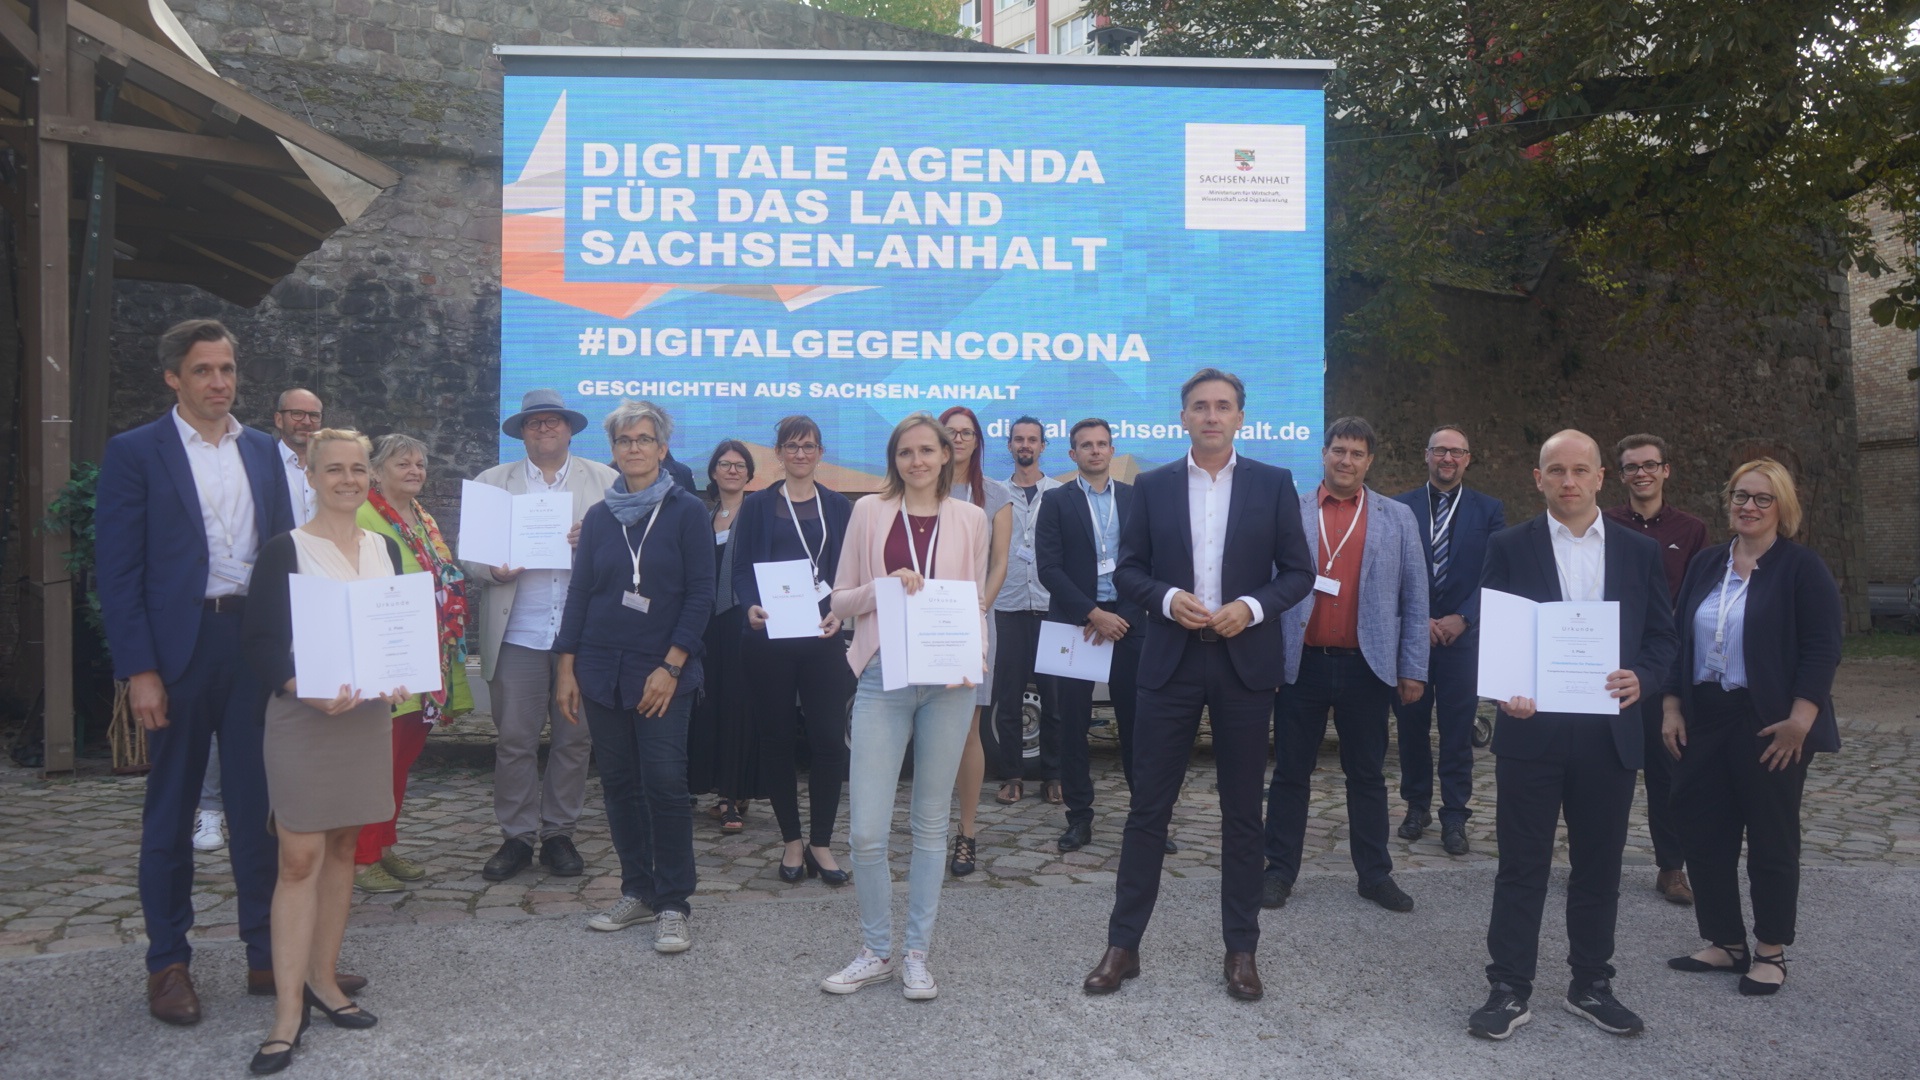 Staatssekretär Thomas Wünsch (Mitte) zeichnete die Preisträgerinnen und Preisträger im Wettbewerb #DigitalGegenCorona des Wirtschaftsministeriums aus